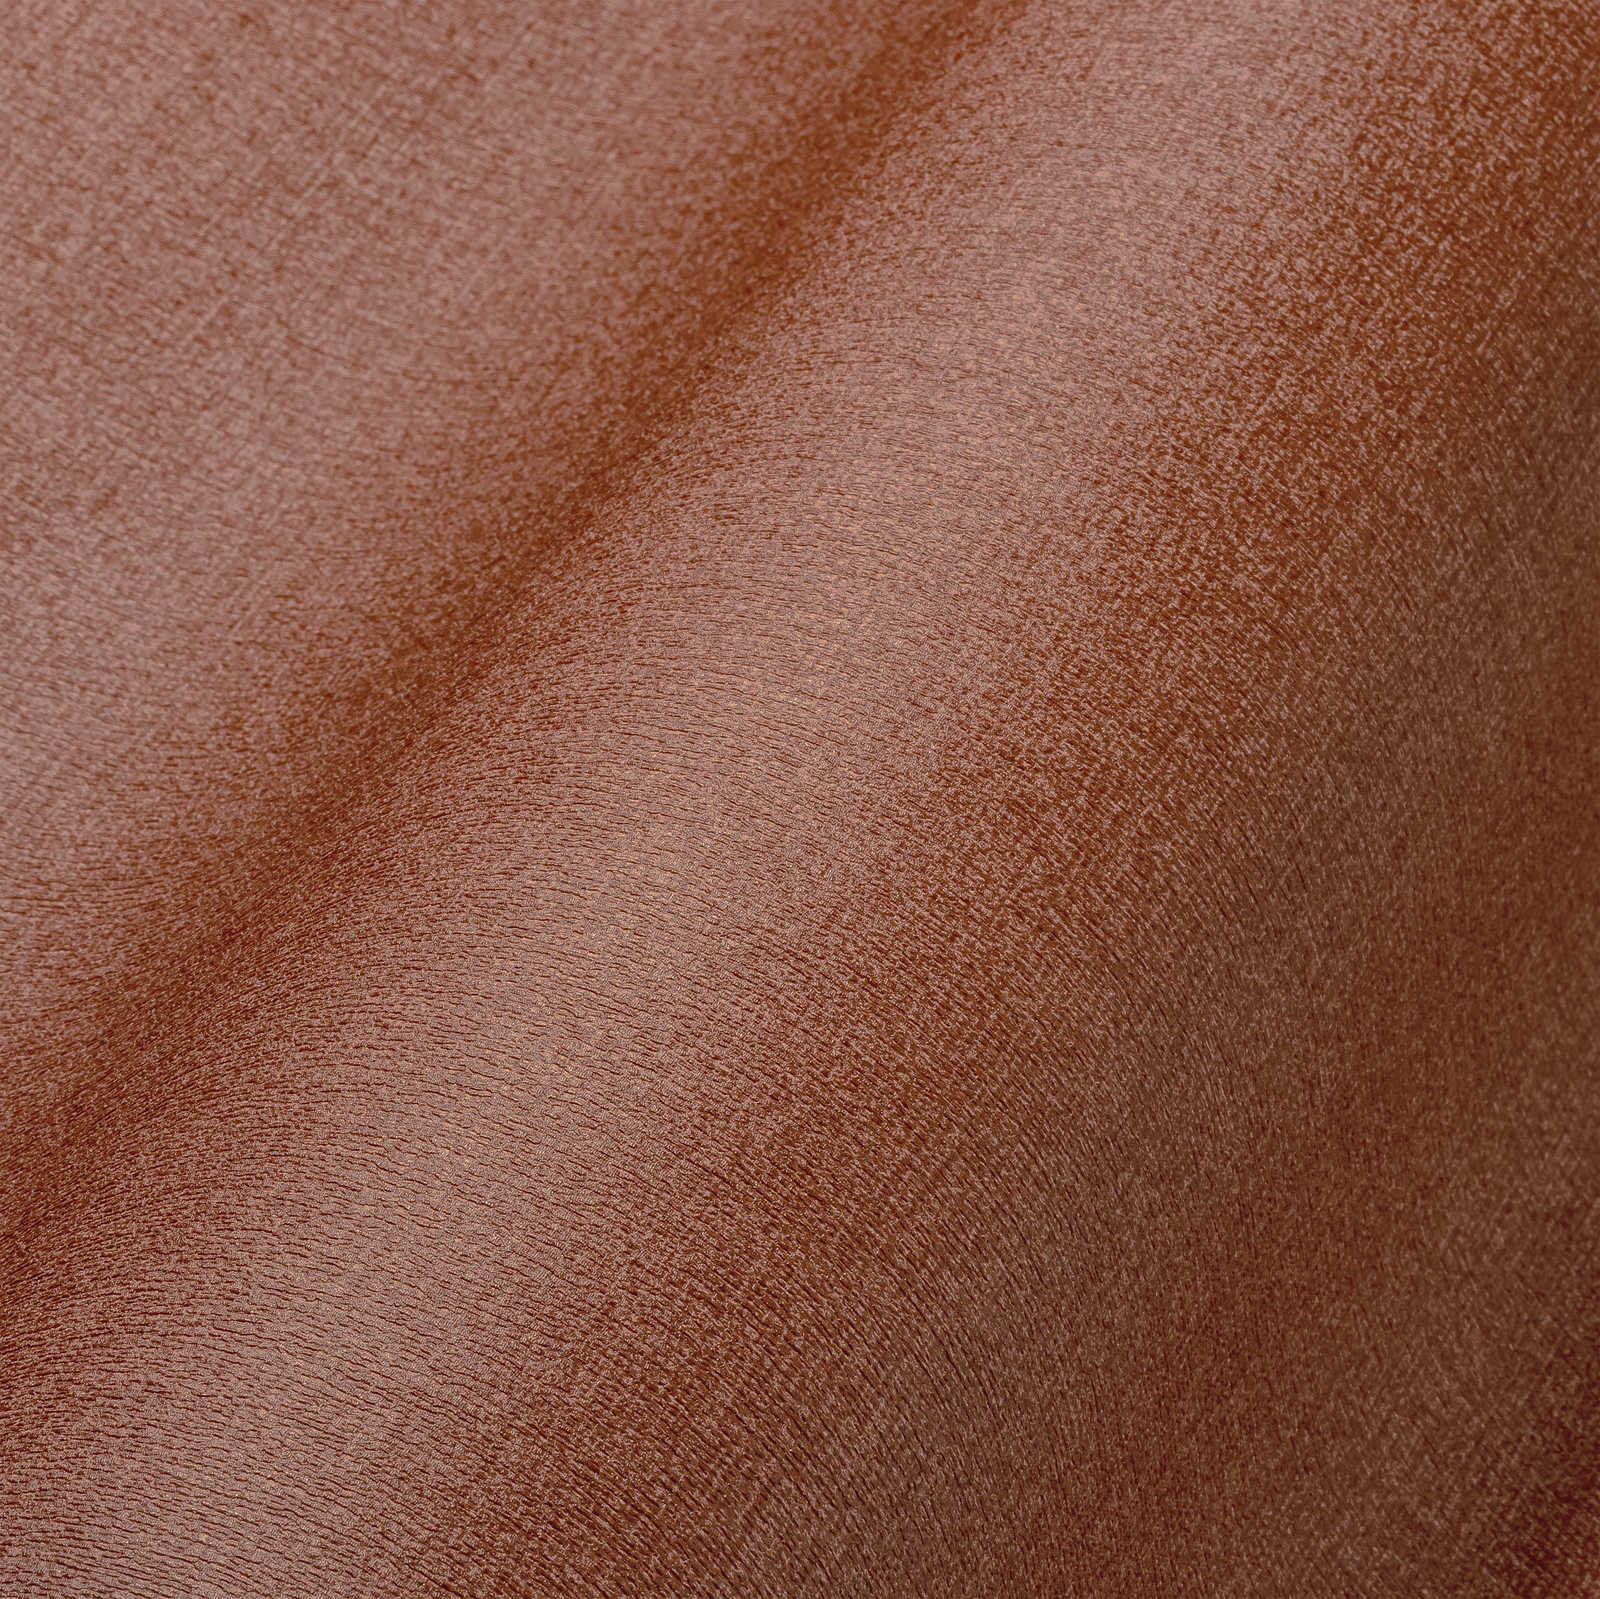             Papel pintado unitario en tonos oscuros - marrón rojizo
        